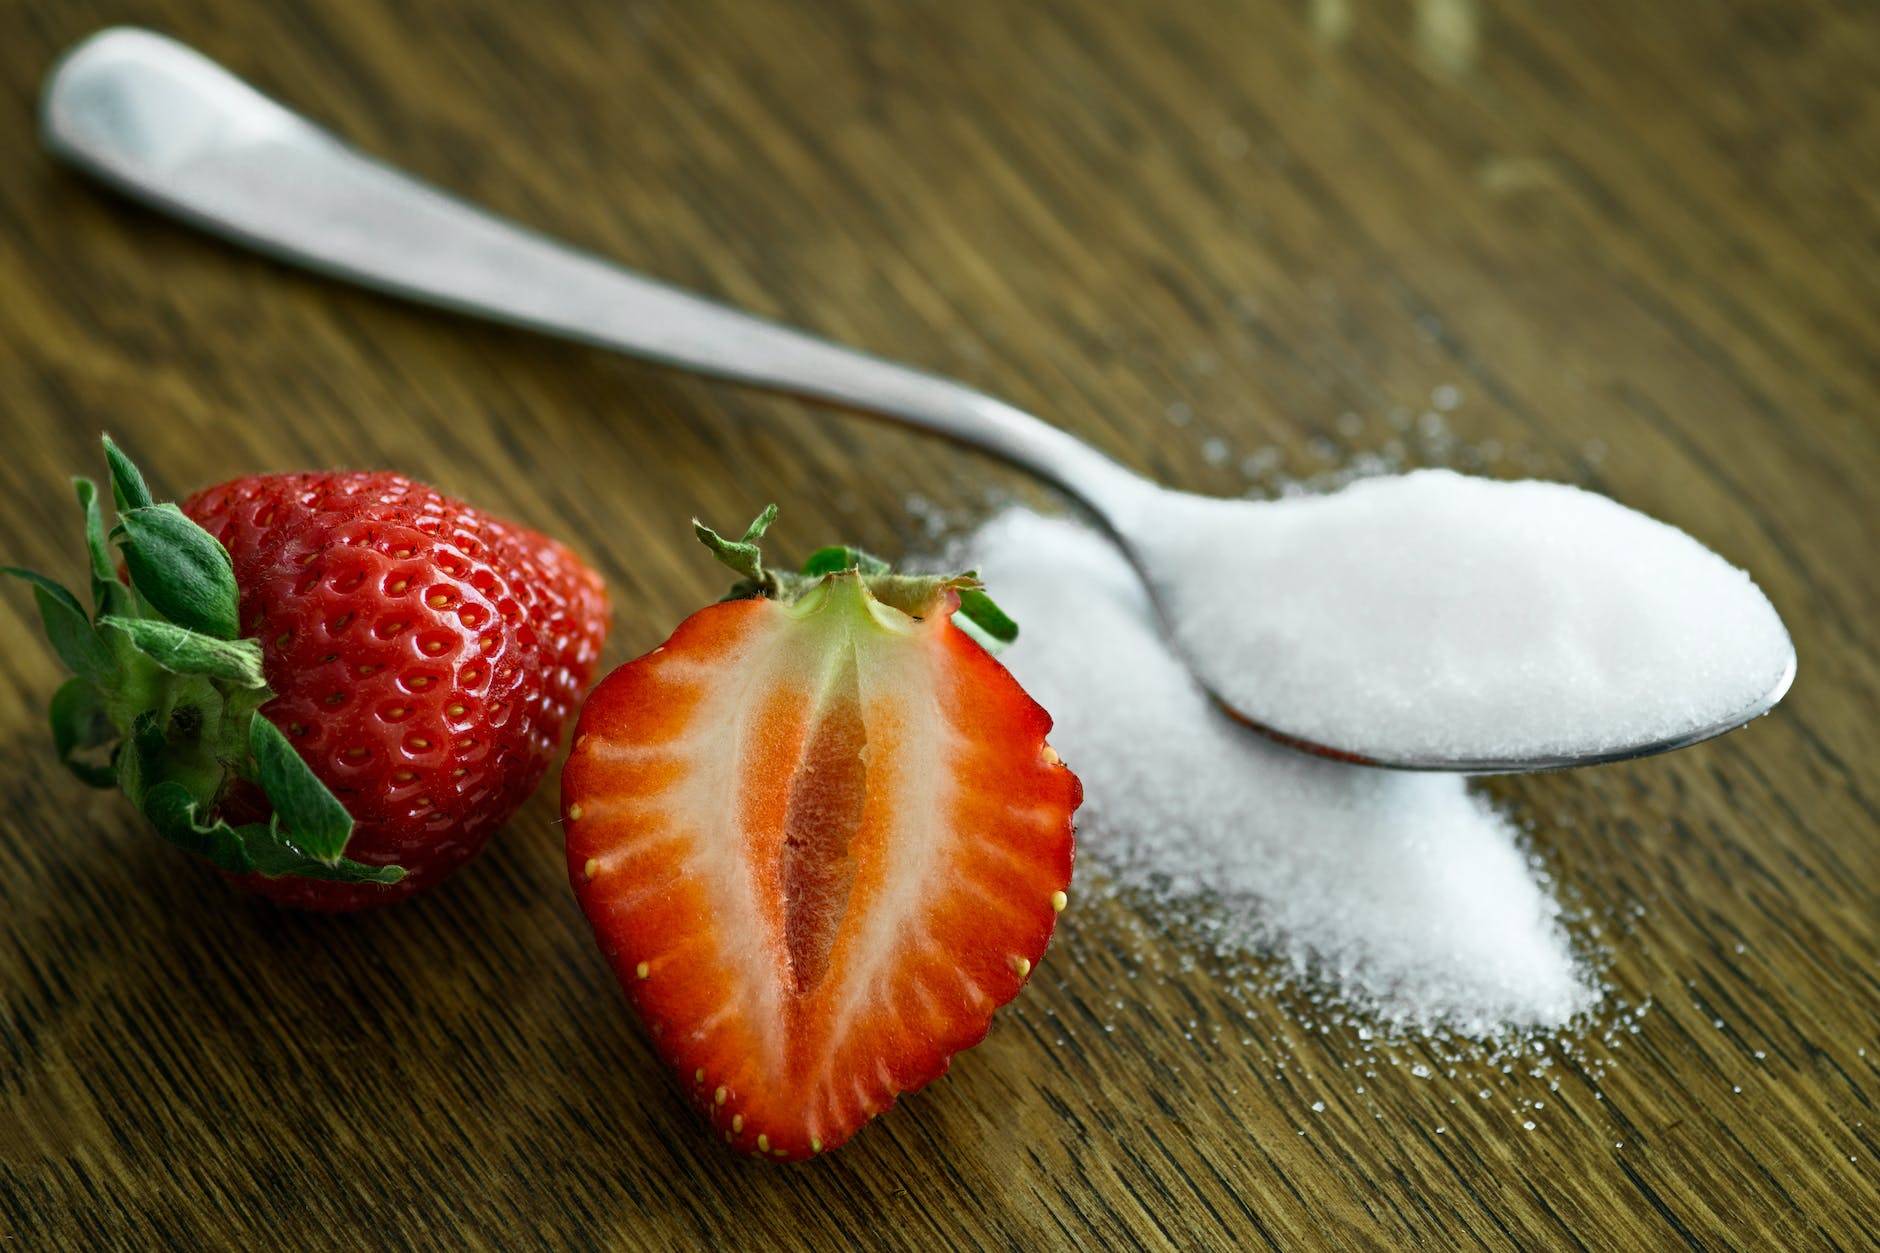 100 grammi di zucchero quanti cucchiai sono?